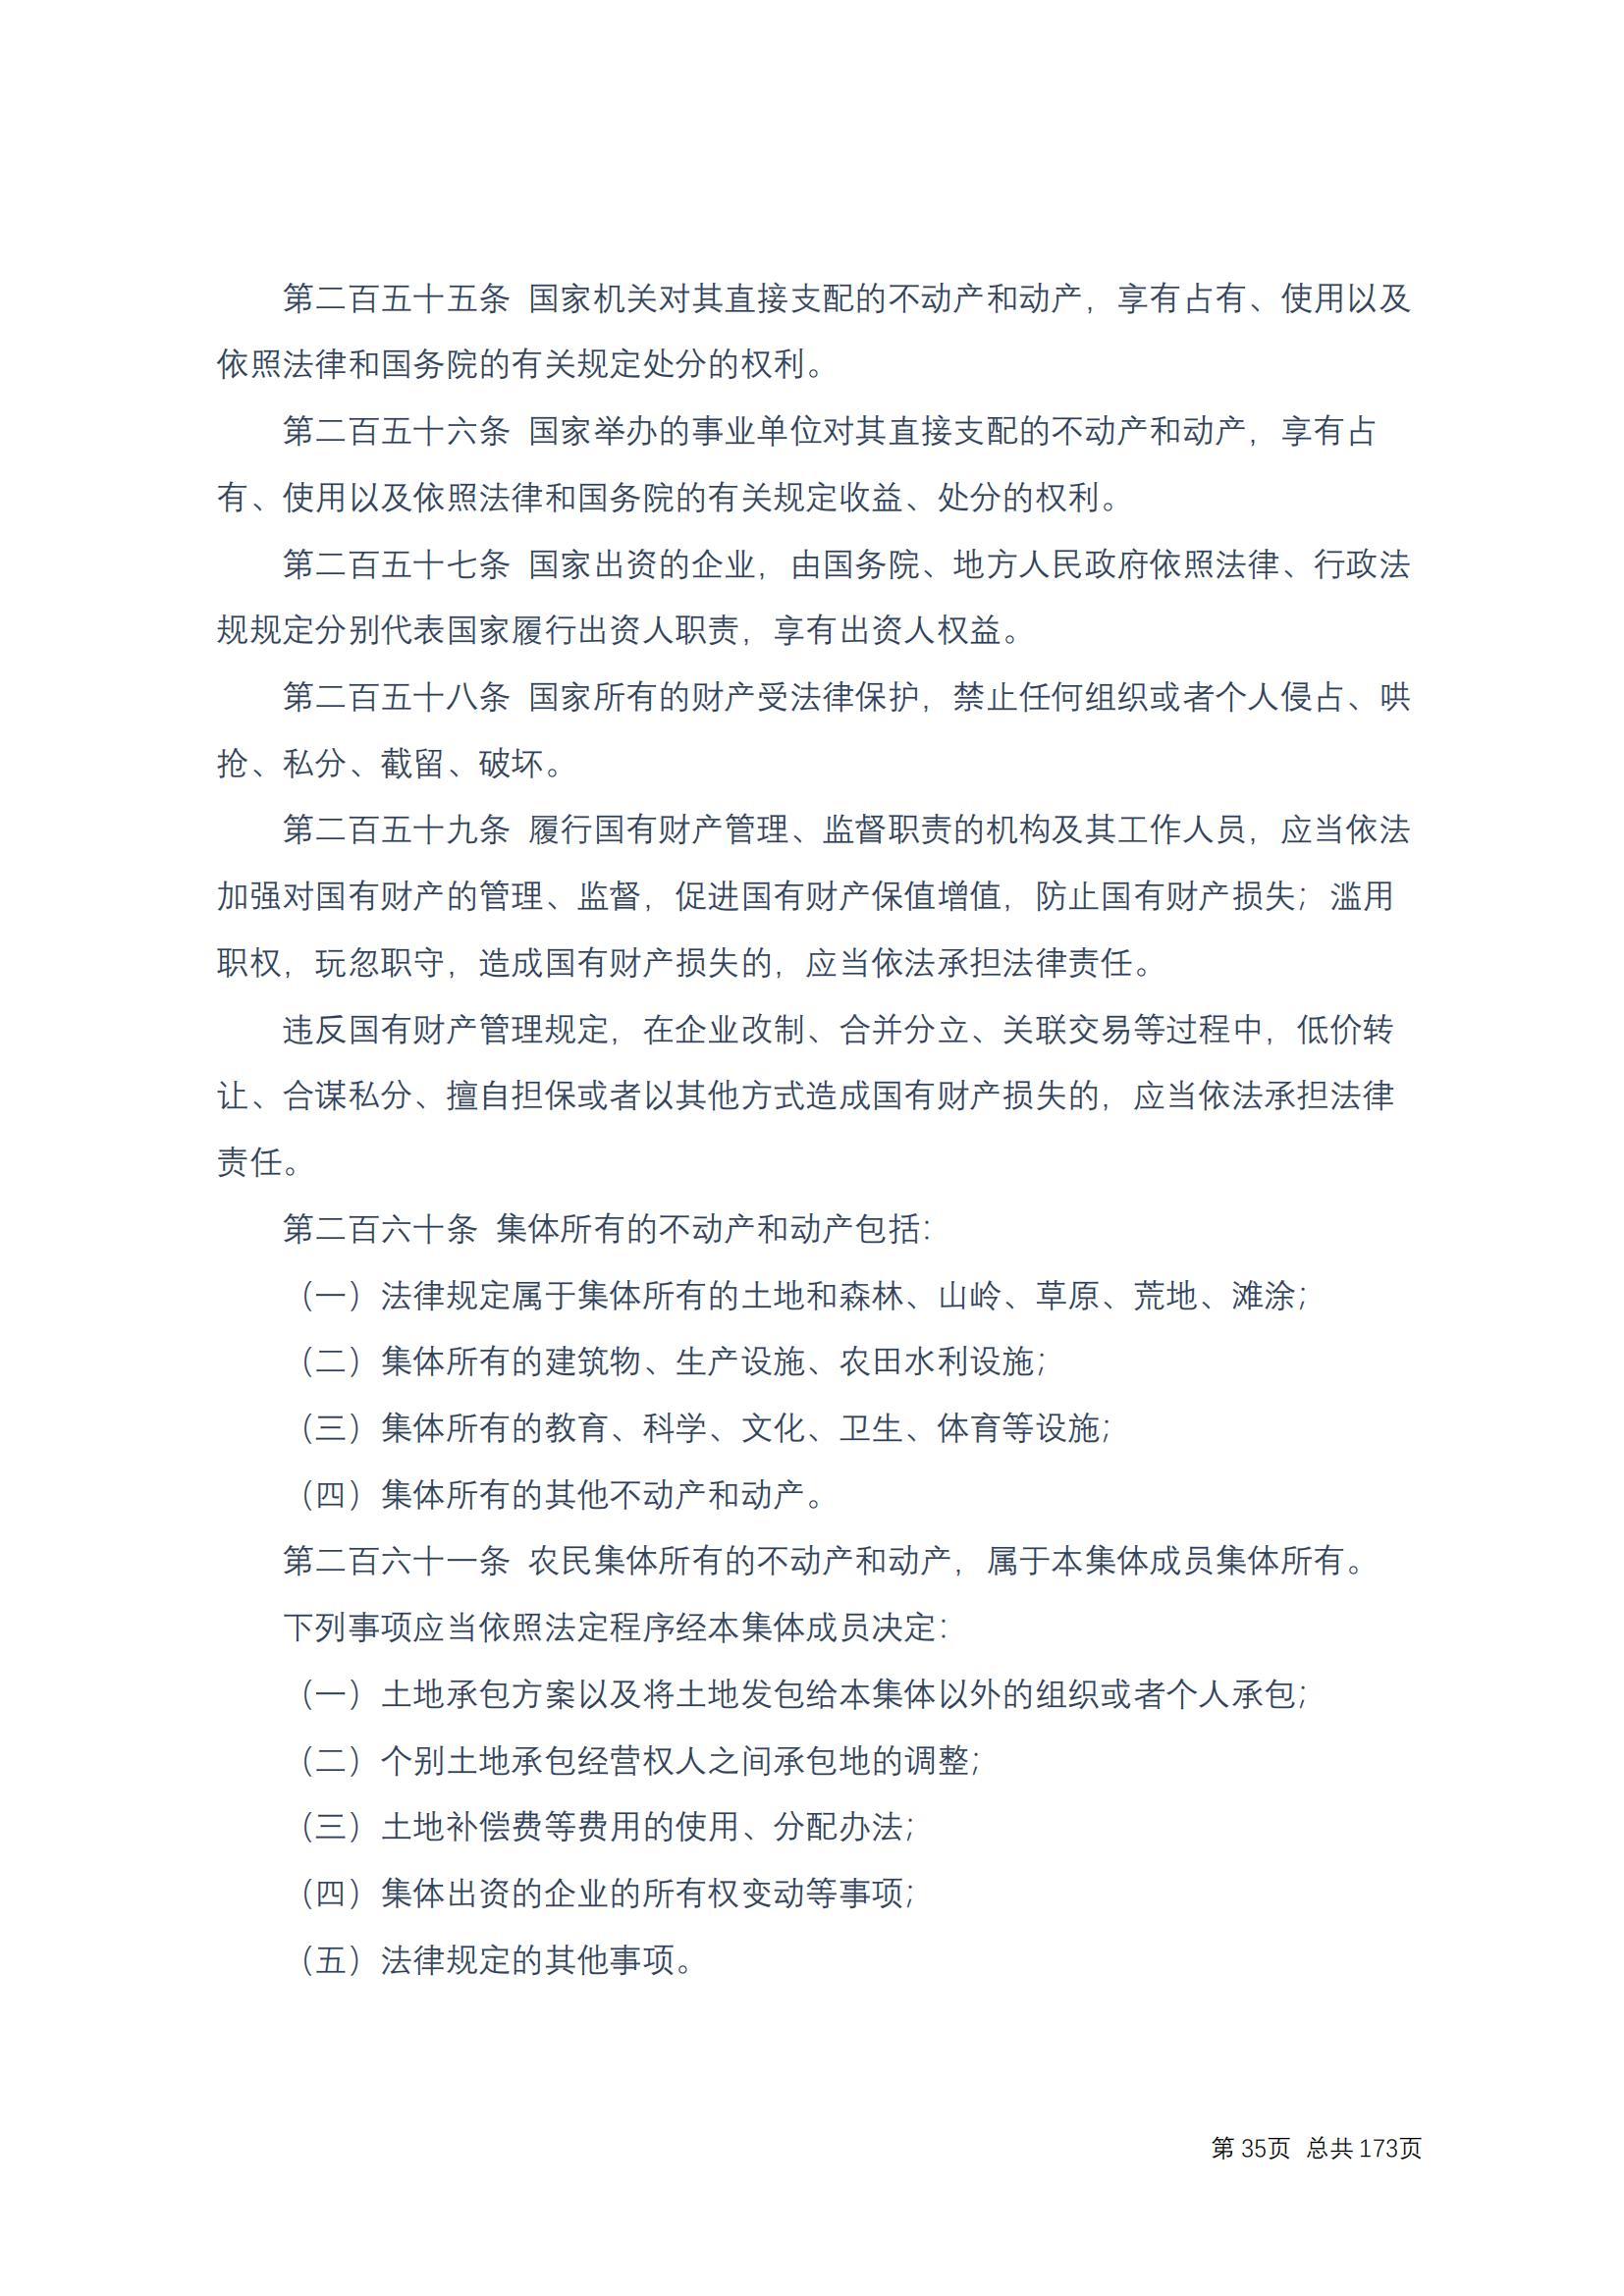 中华人民共和国民法典 修改过_34